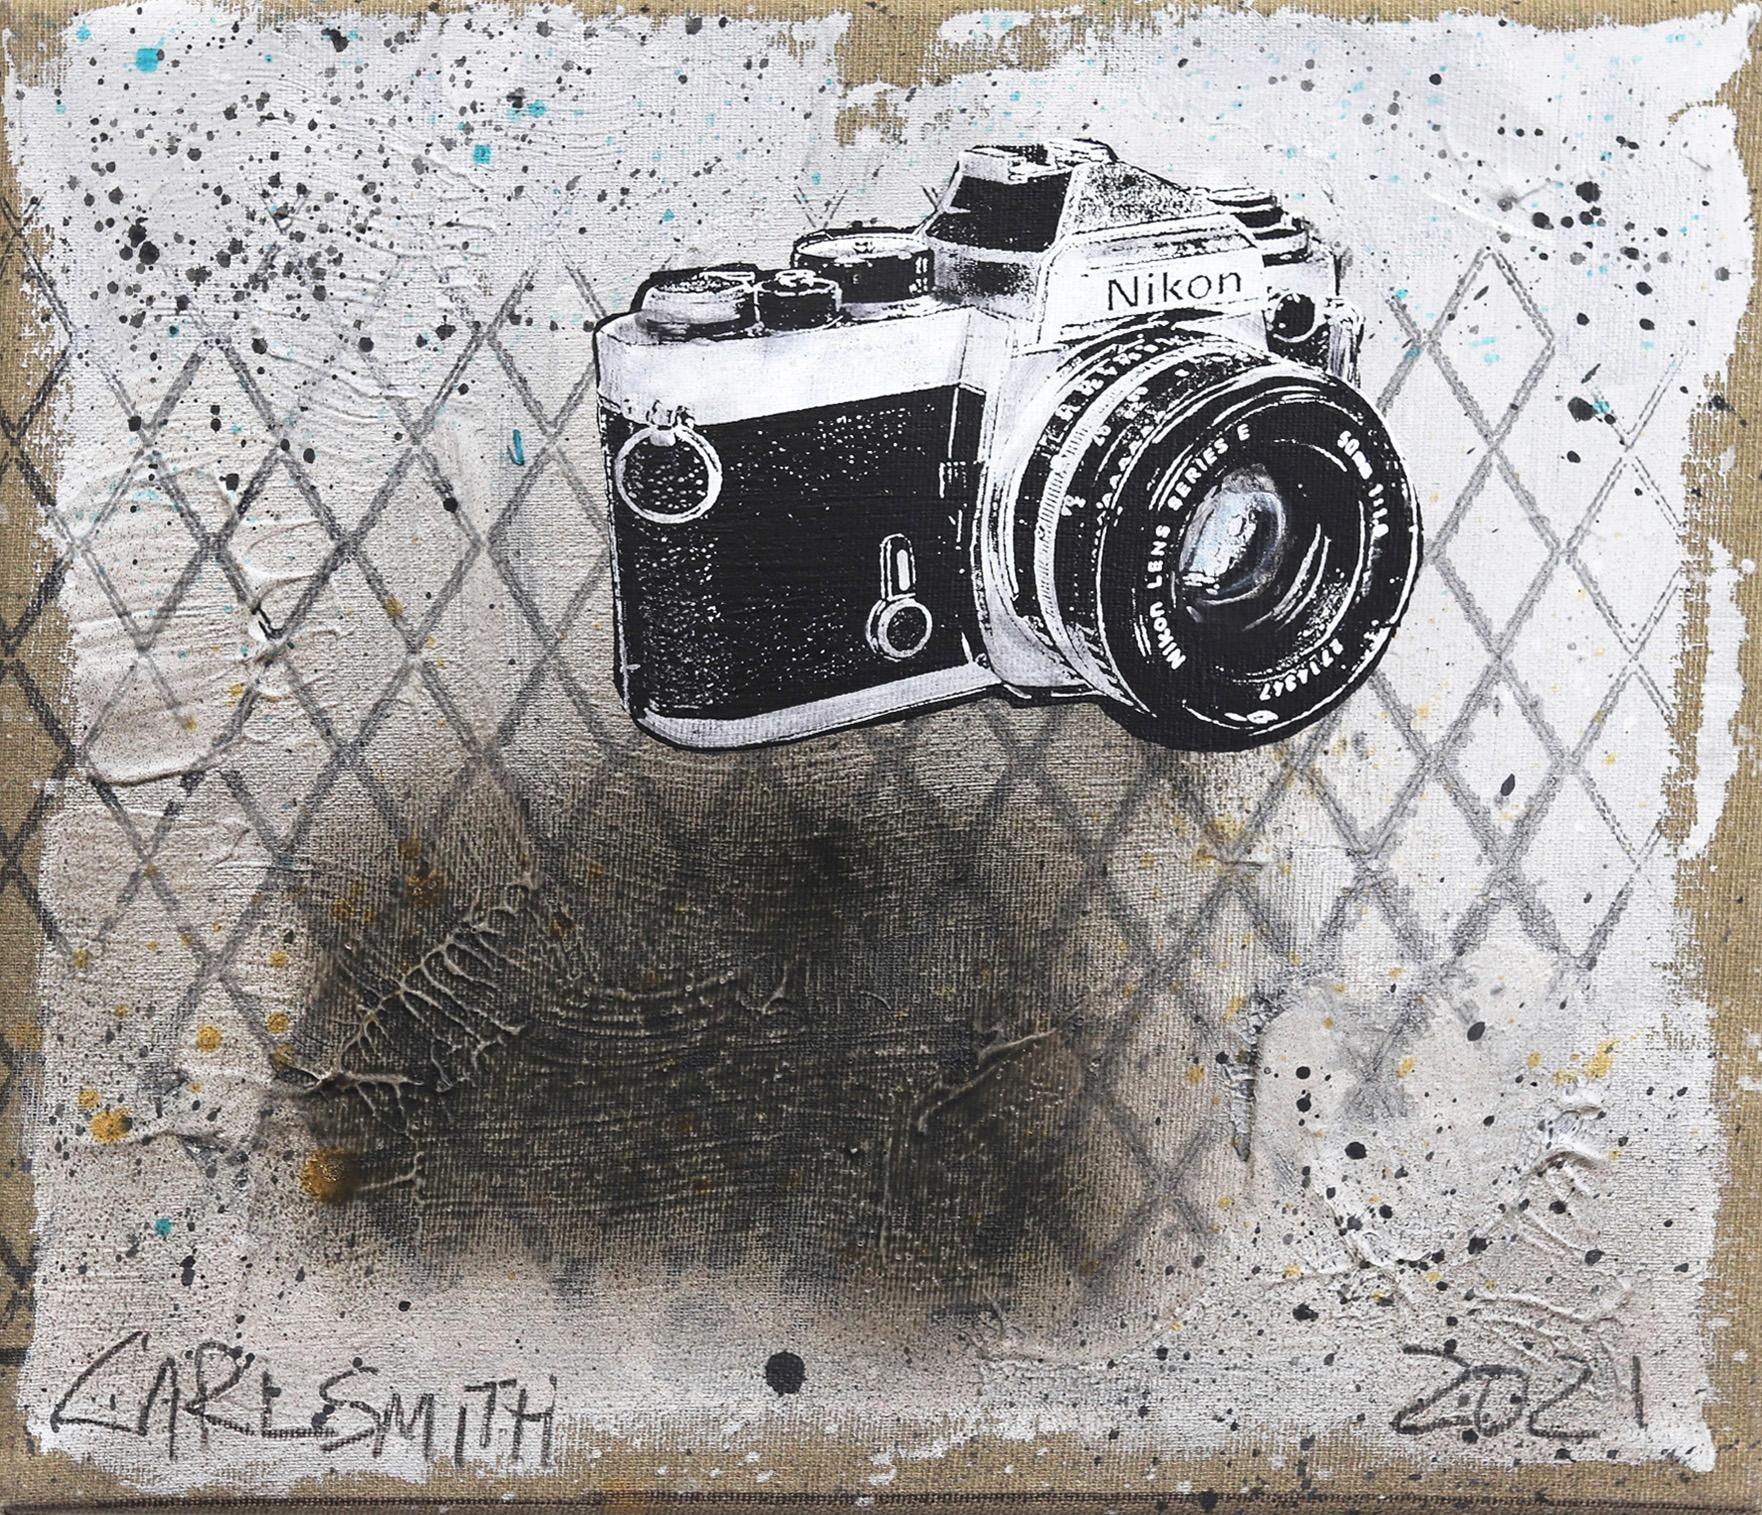 Nikon Away - Pop Art inspiré par Camera Original de Carl Smith